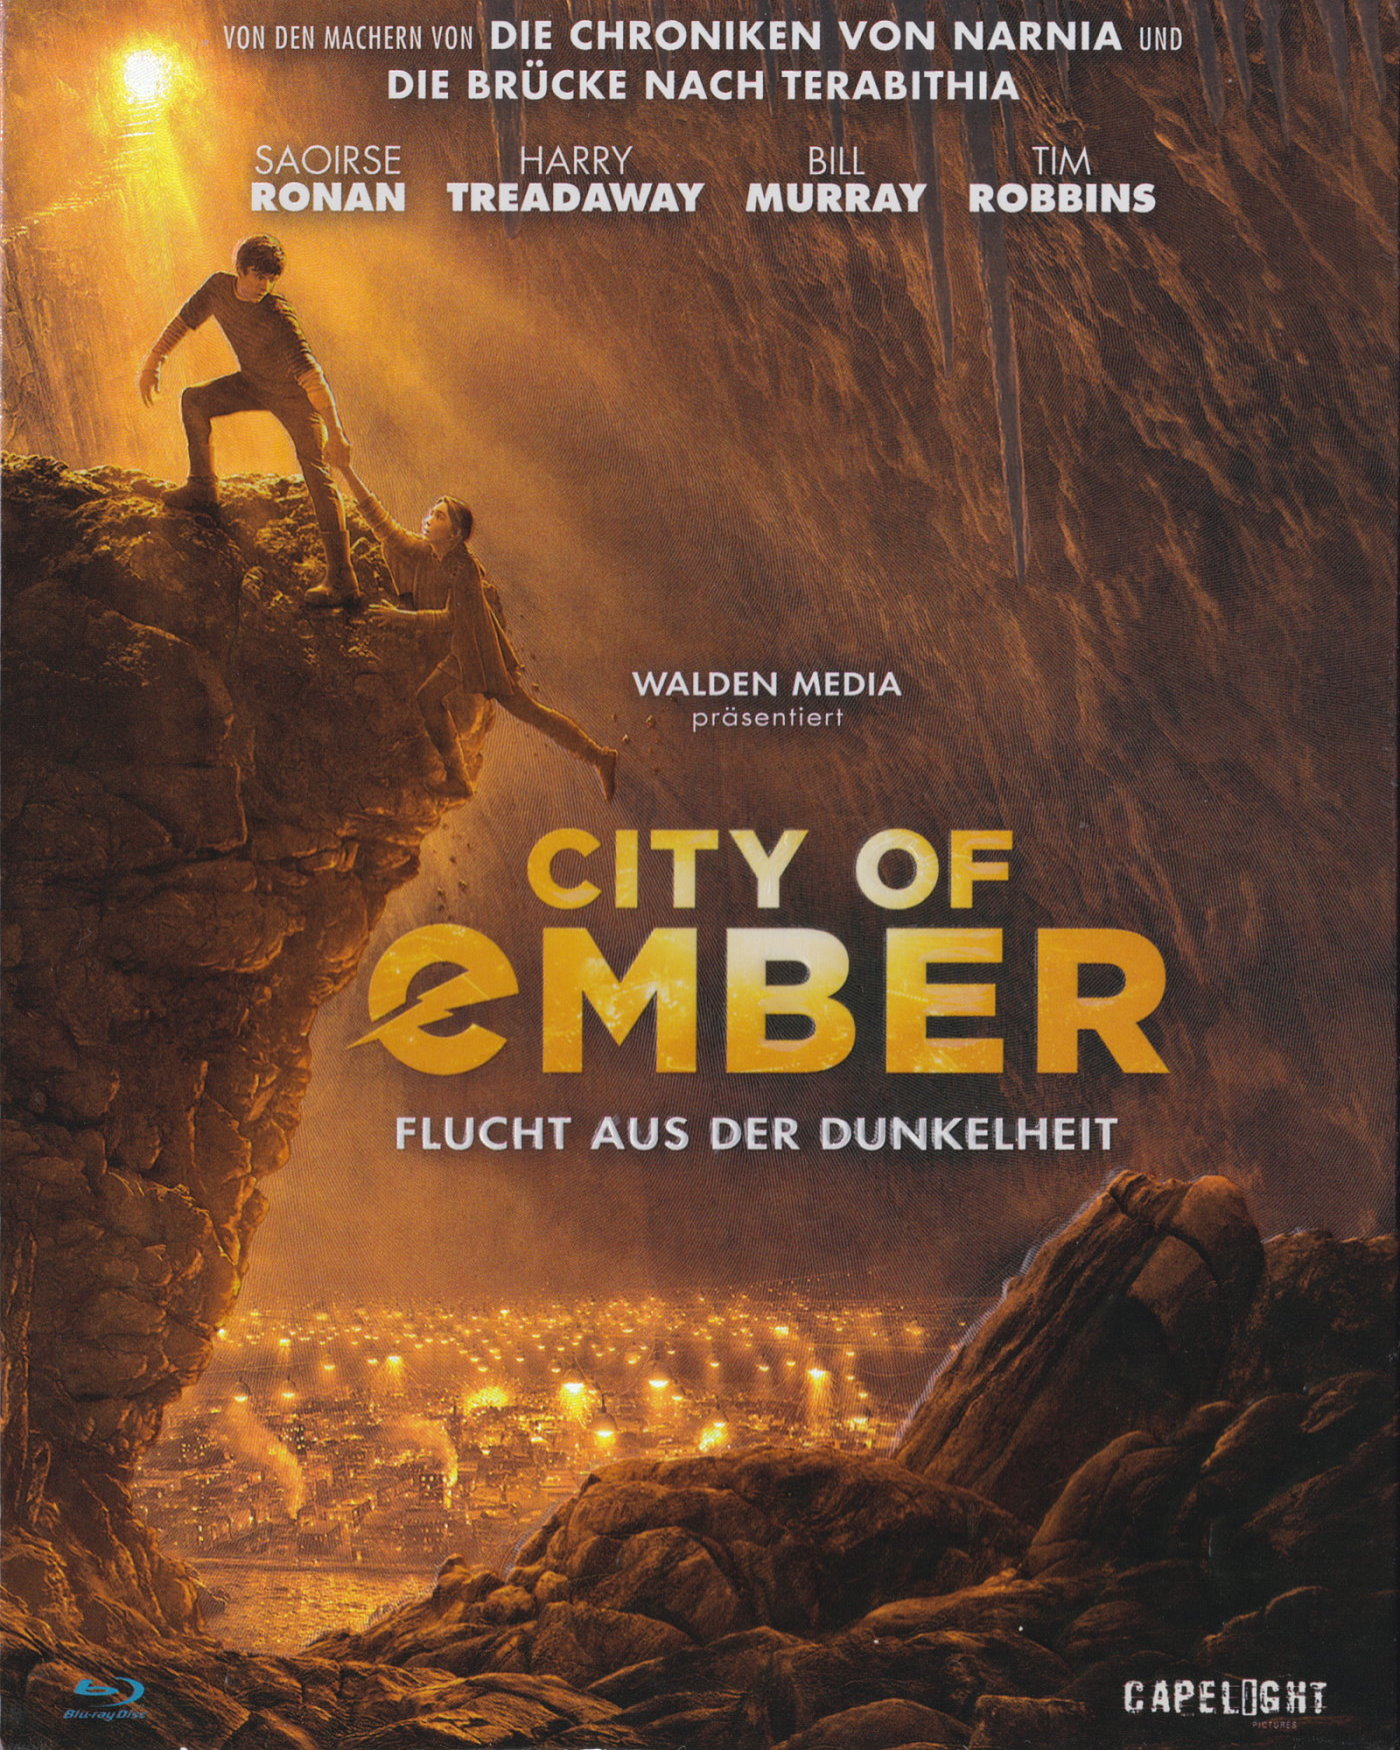 Cover - City of Ember - Flucht aus der Dunkelheit.jpg